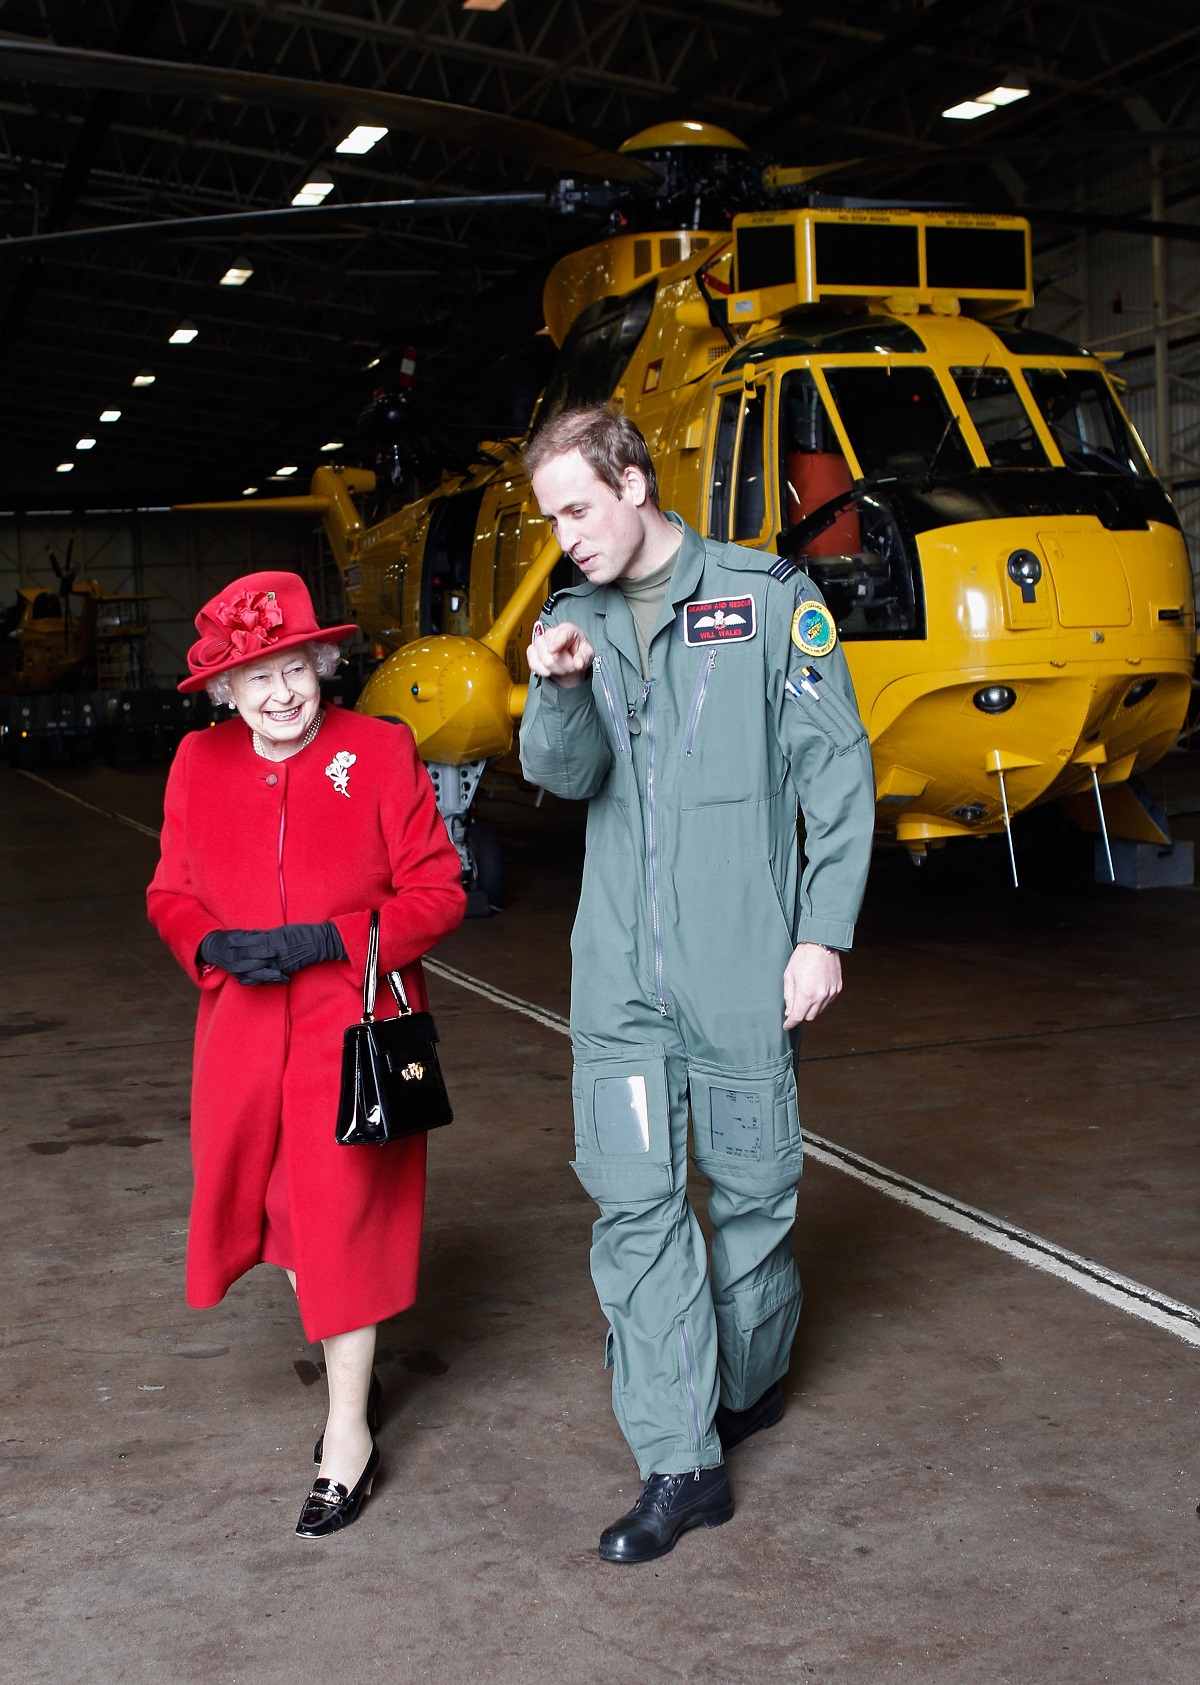 Regina Elisabeta îmbrăcată într-un costum roșu și purtând o pălărie de aceeasși culoare în timp ce merge alături de nepotul său, Prințul William care poartă un costum de militar